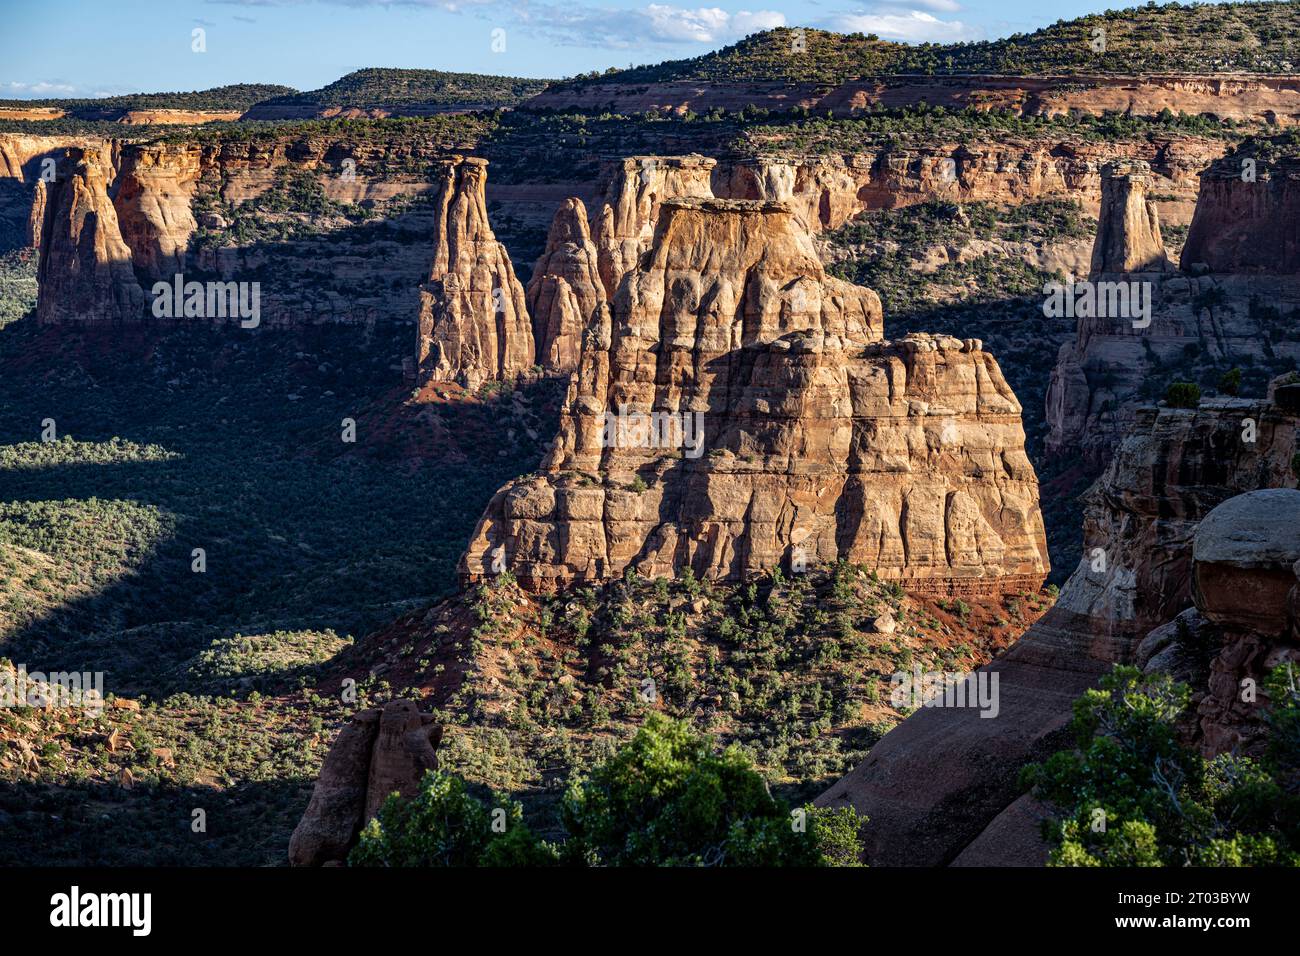 La lumière du crépuscule illumine les monumnets du Monument Canyon dans le Colorado National Monument Banque D'Images